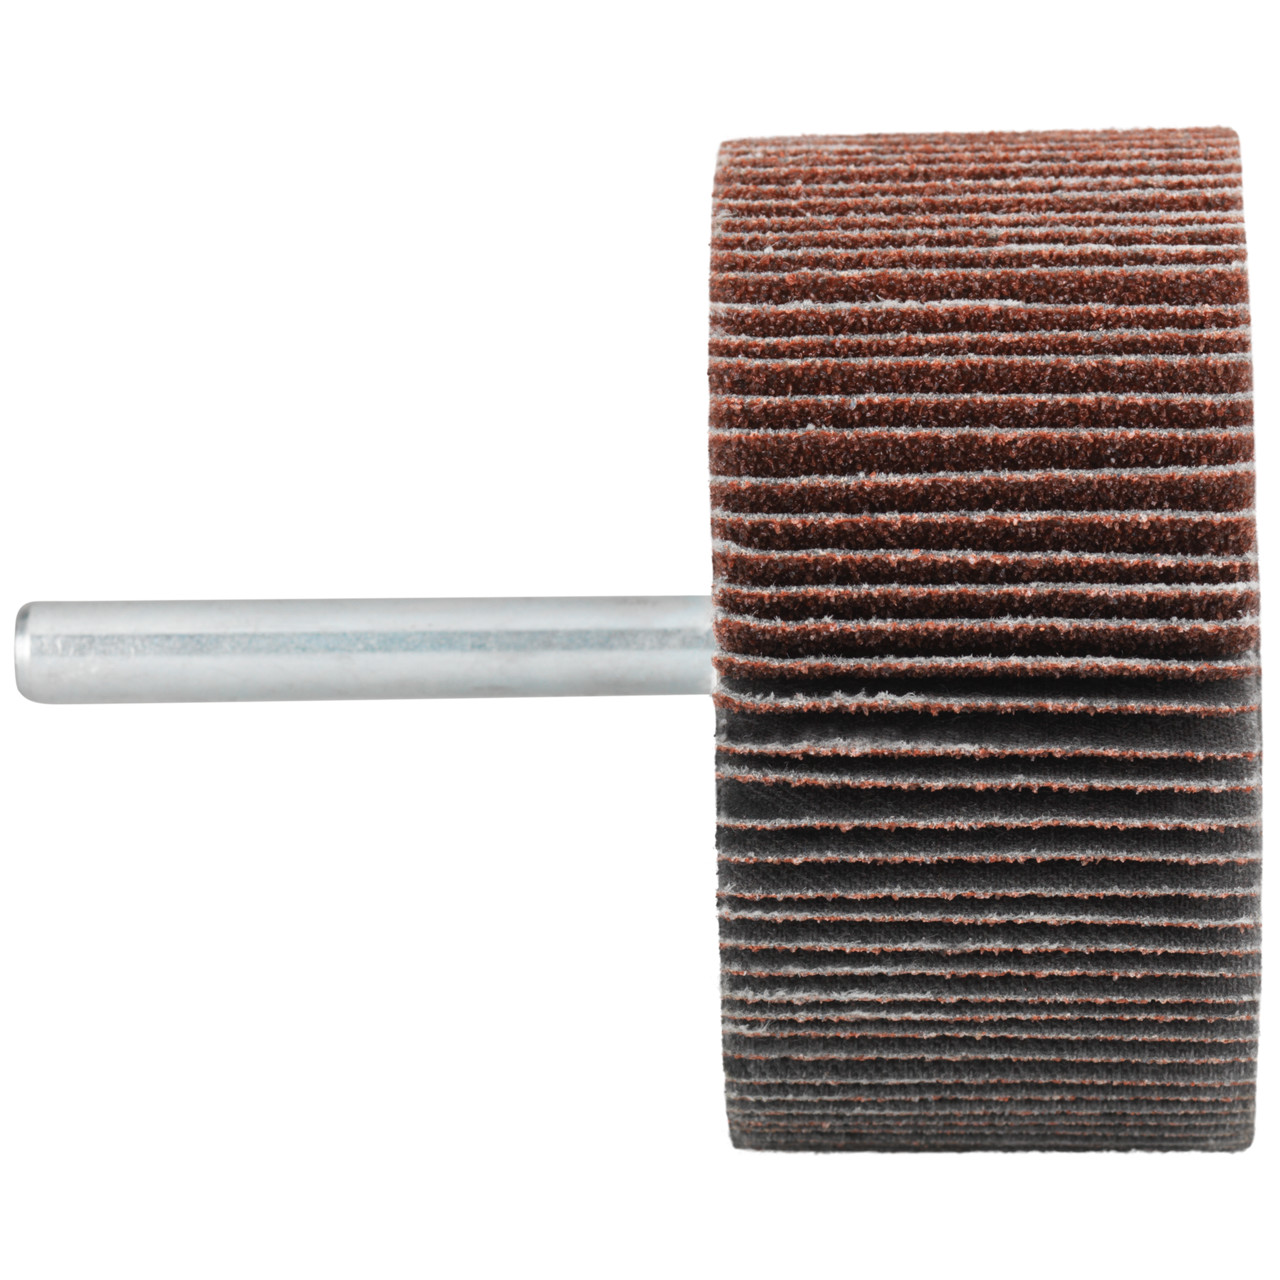 Tyrolit A-P01 C X Pennen DxD 60x20 Voor staal, roestvast staal en non-ferrometalen, P320, vorm: 52LA, Art. 816958